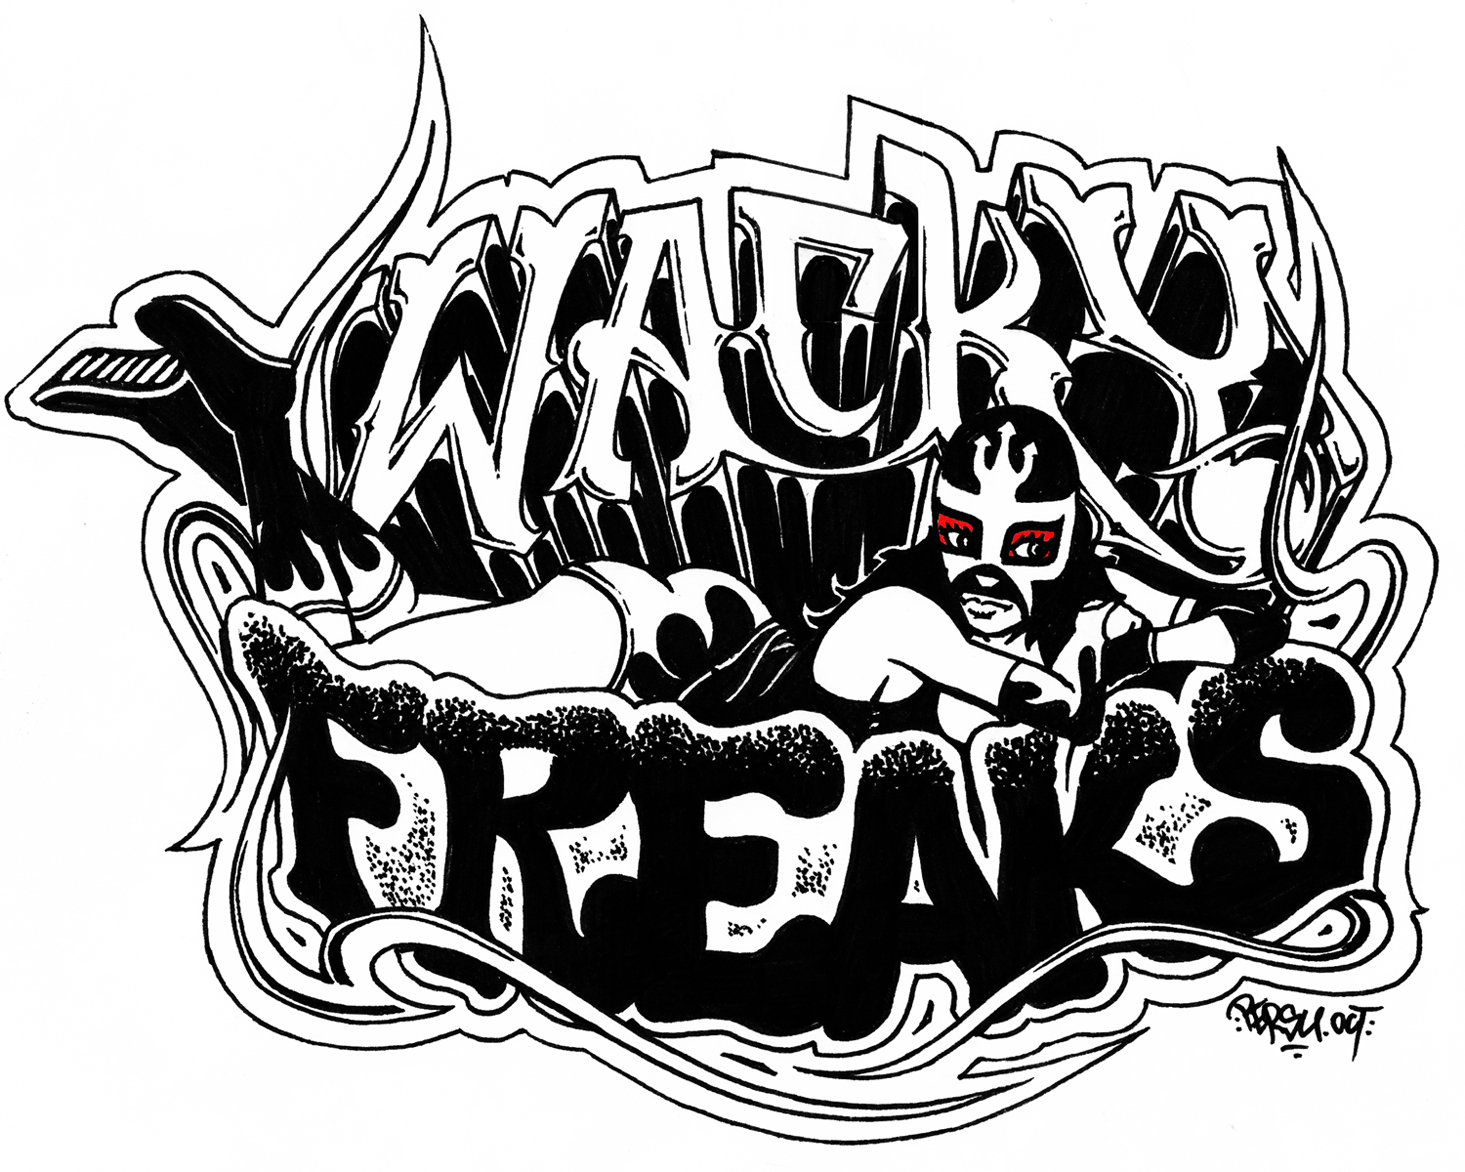 Les WACKY FREAKS : Un groupe complètement déjanté !!!